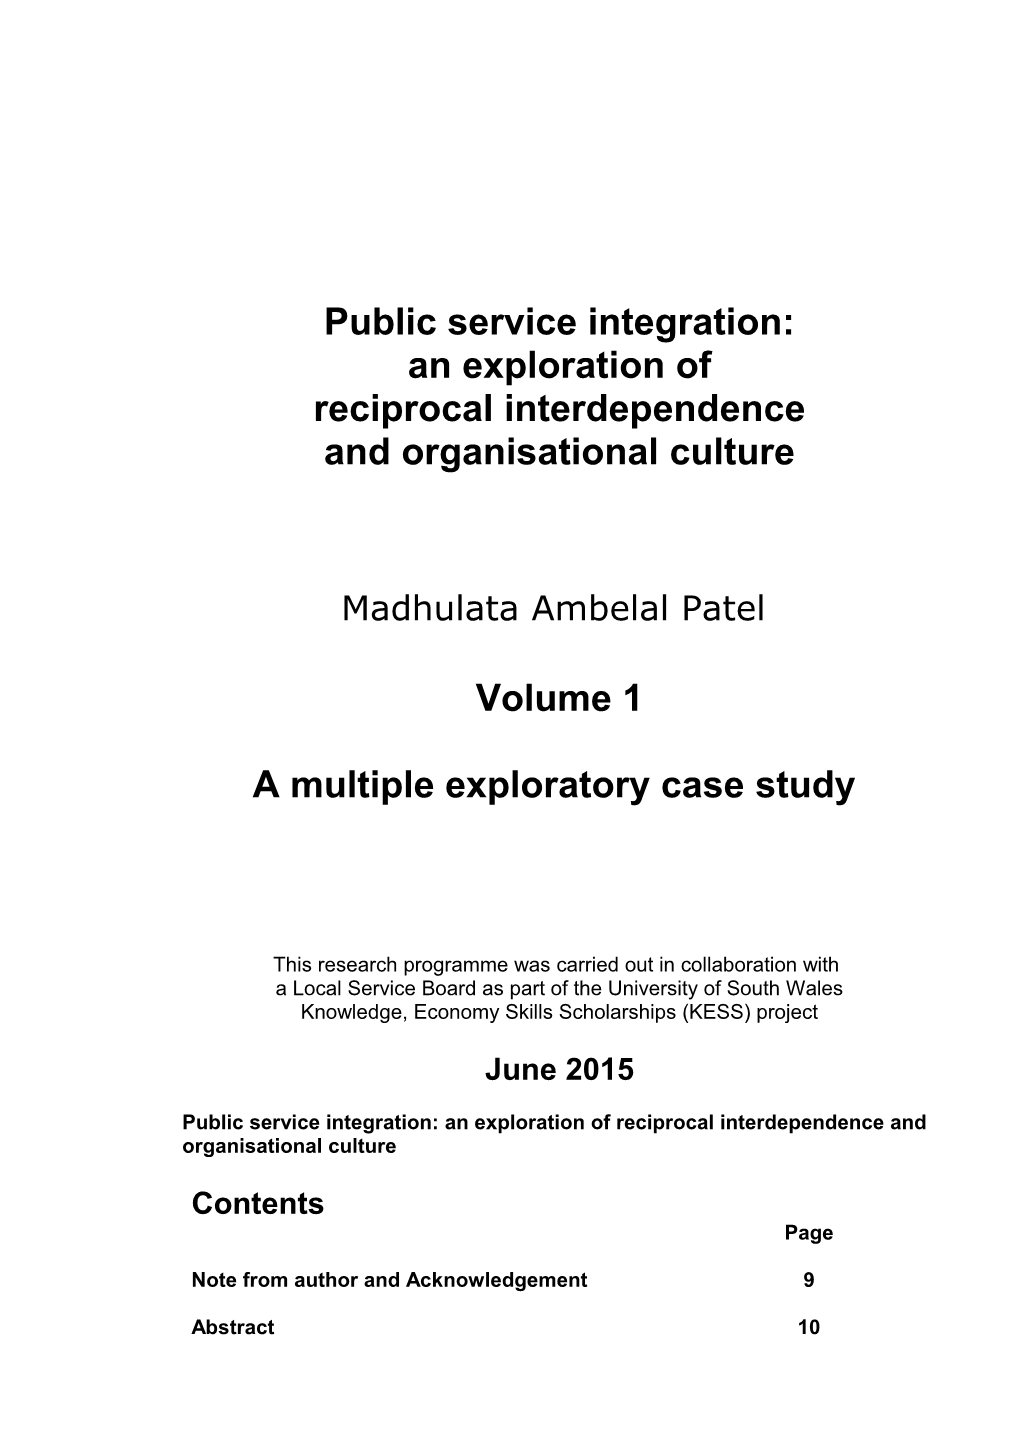 Public Service Integration